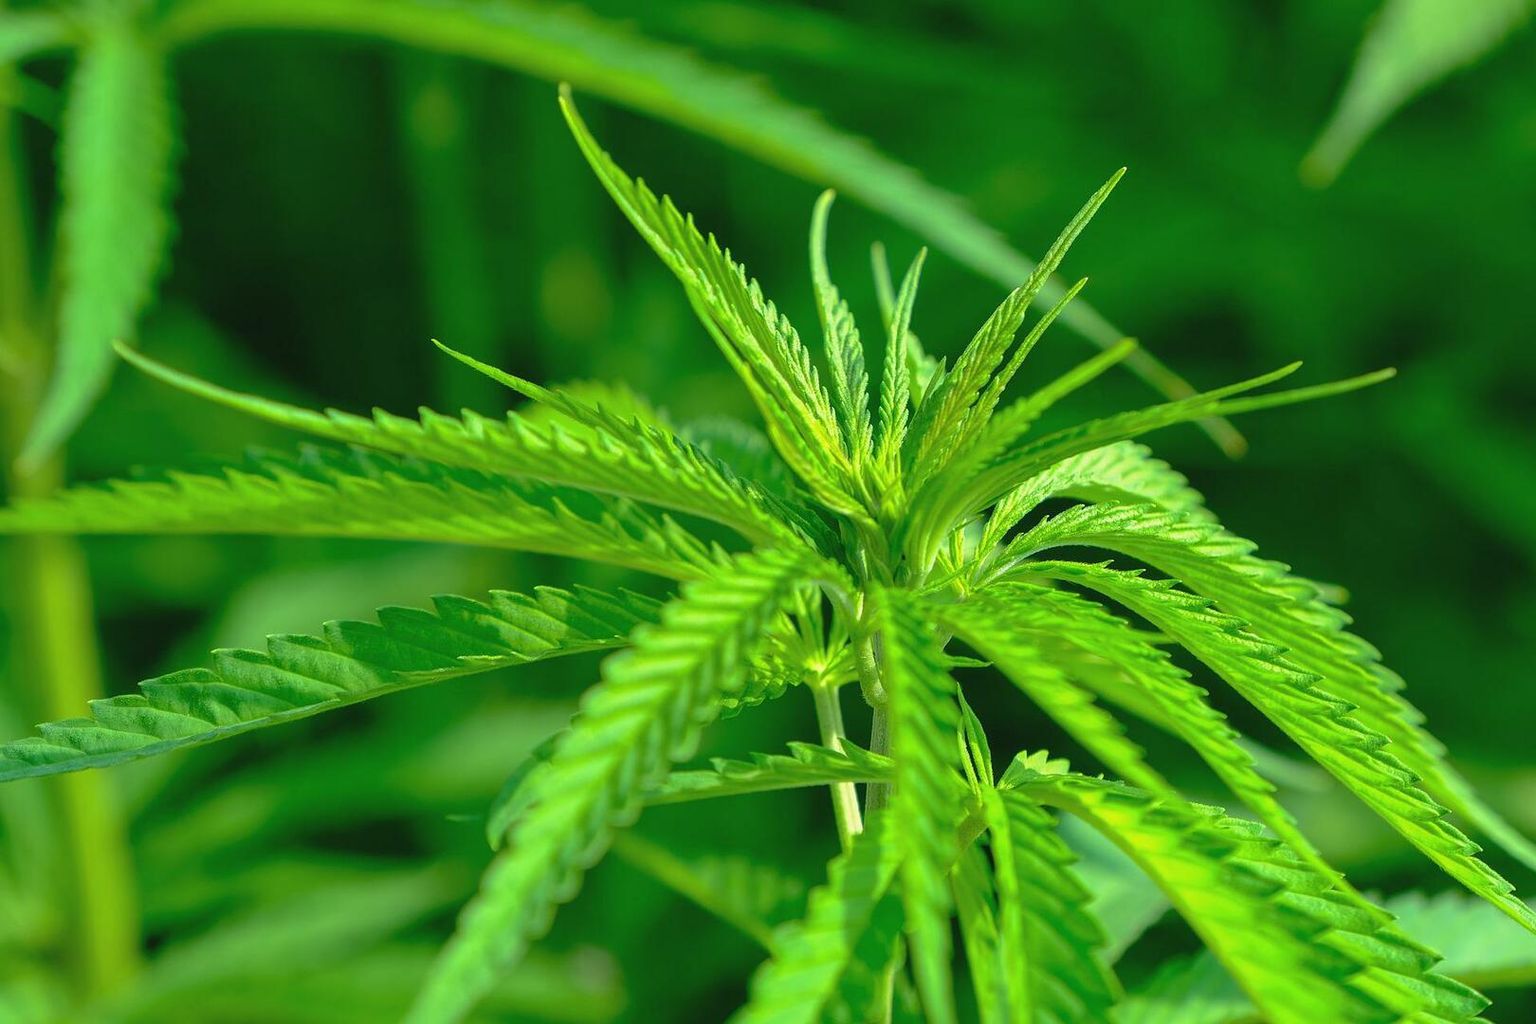 Gros plan sur un plant de cannabis